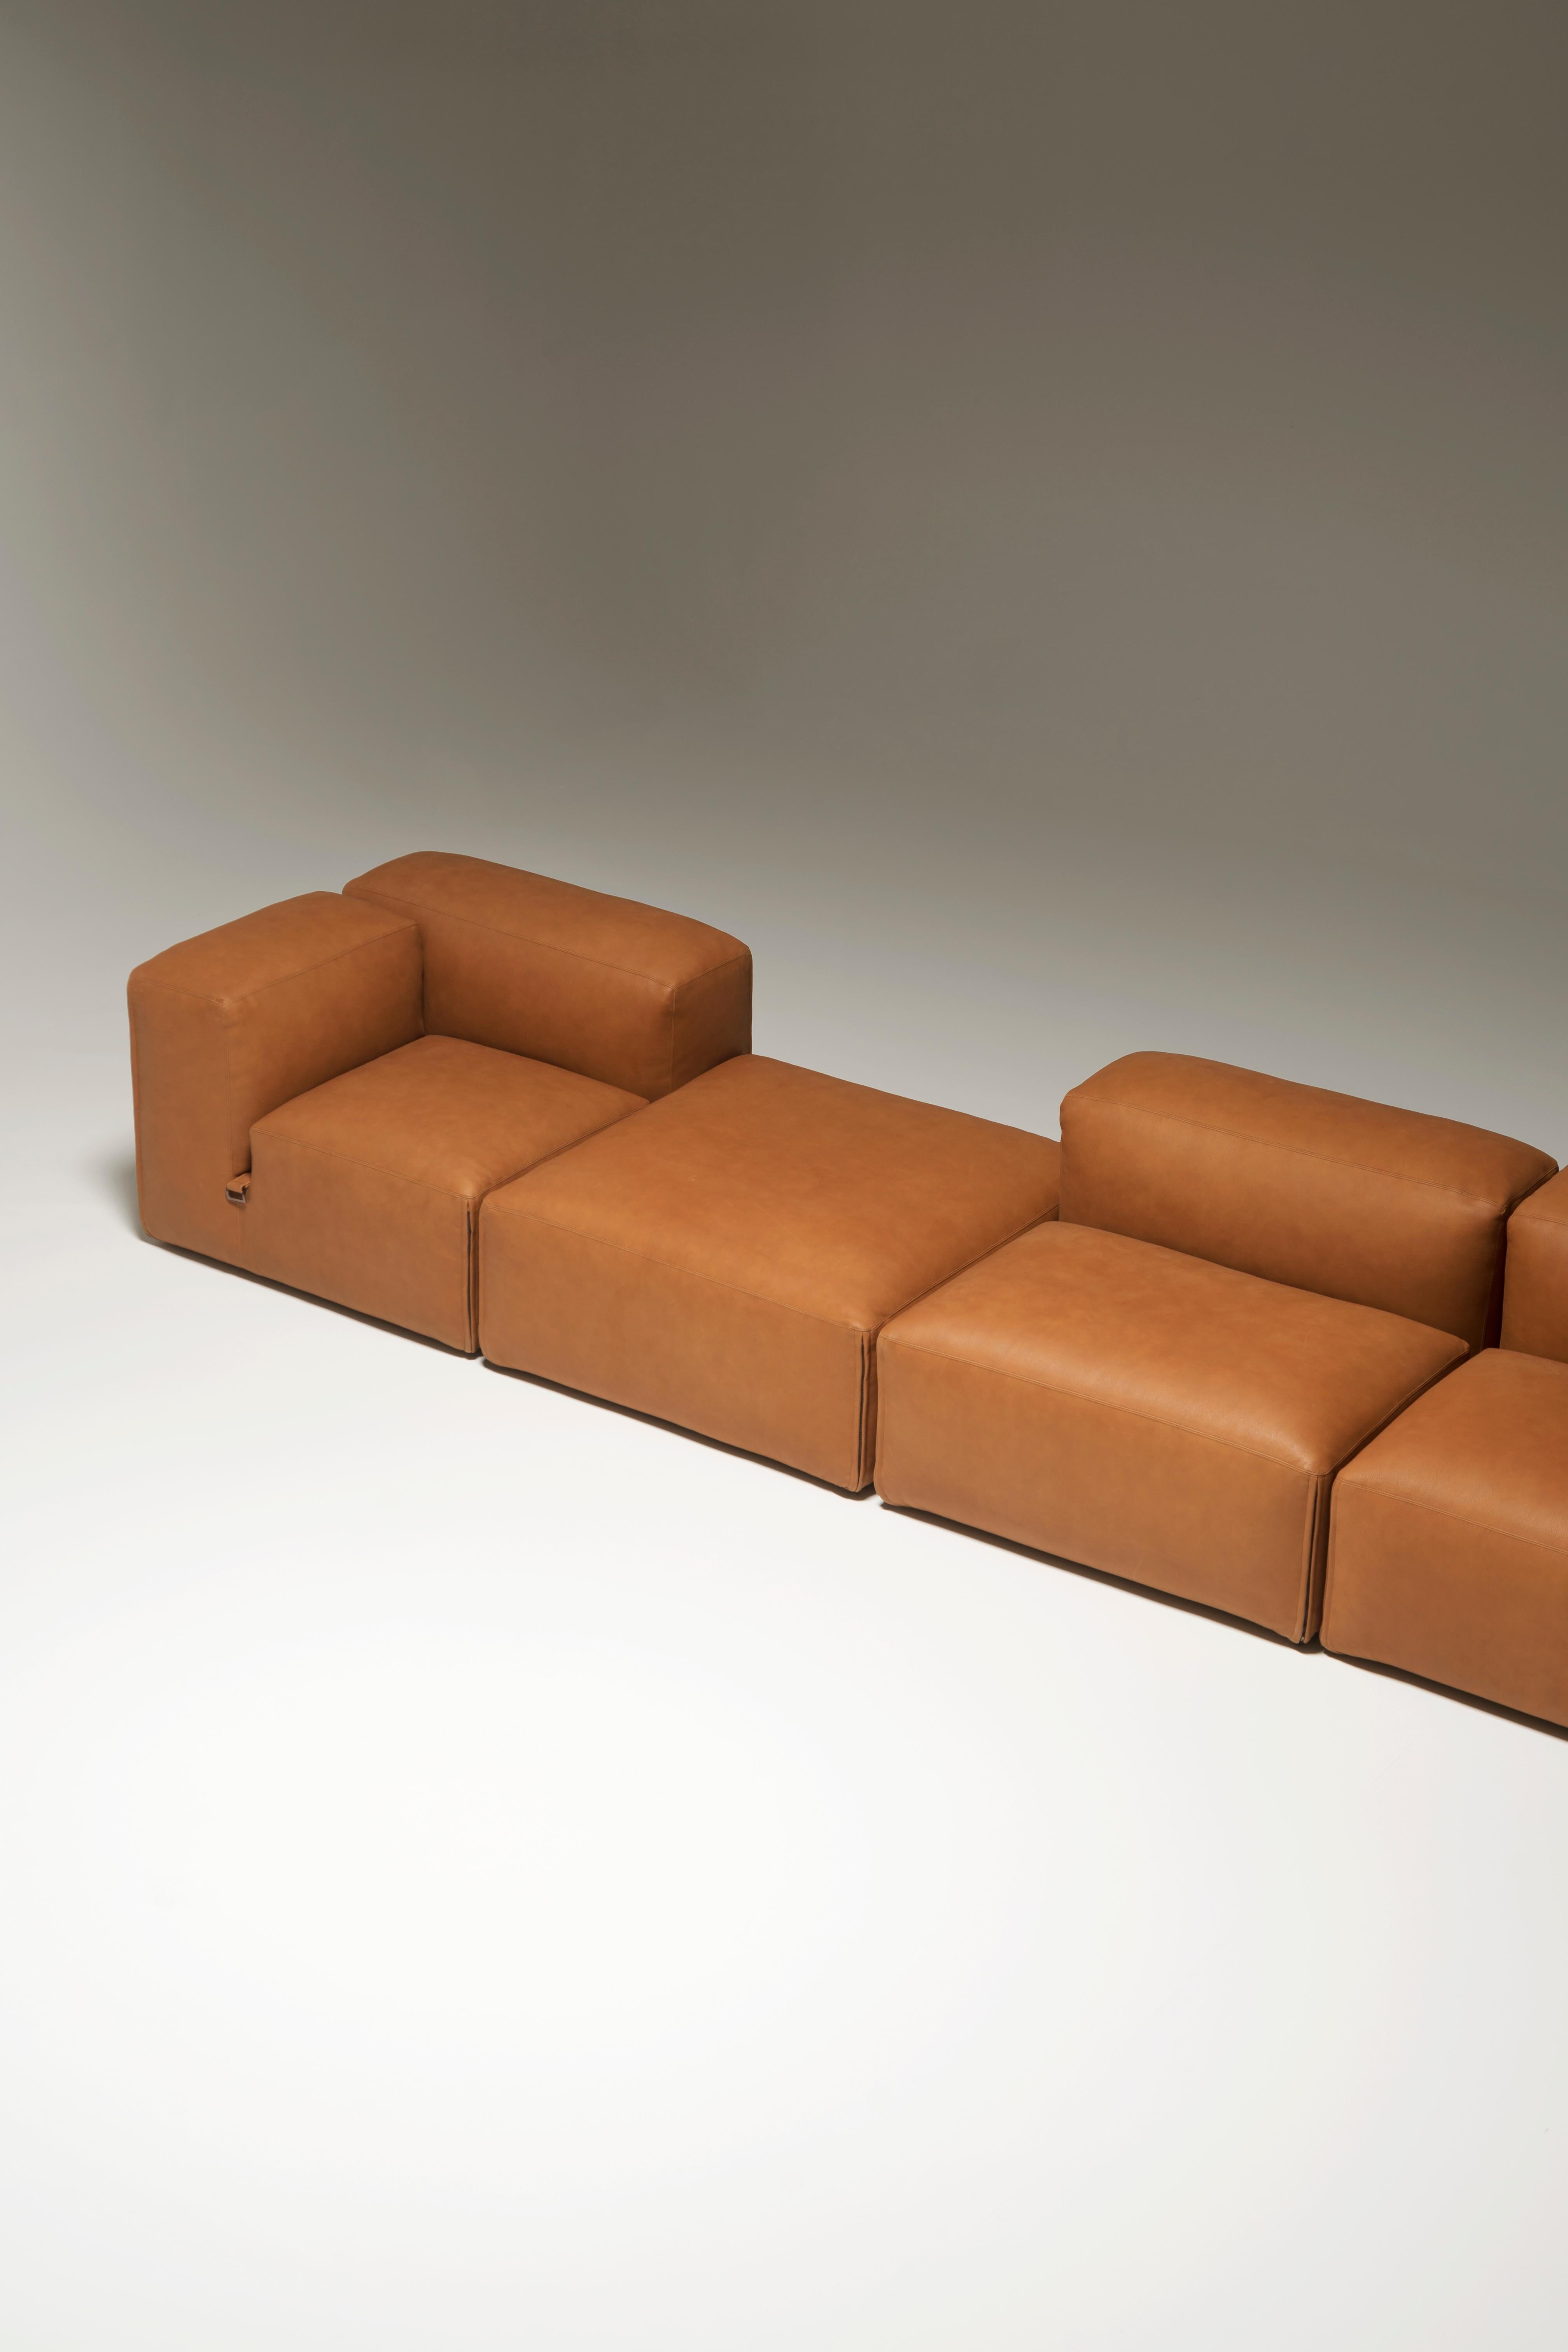 Tacchini Le Mura Modular Sofa designed by Mario Bellini In New Condition In Brooklyn, NY